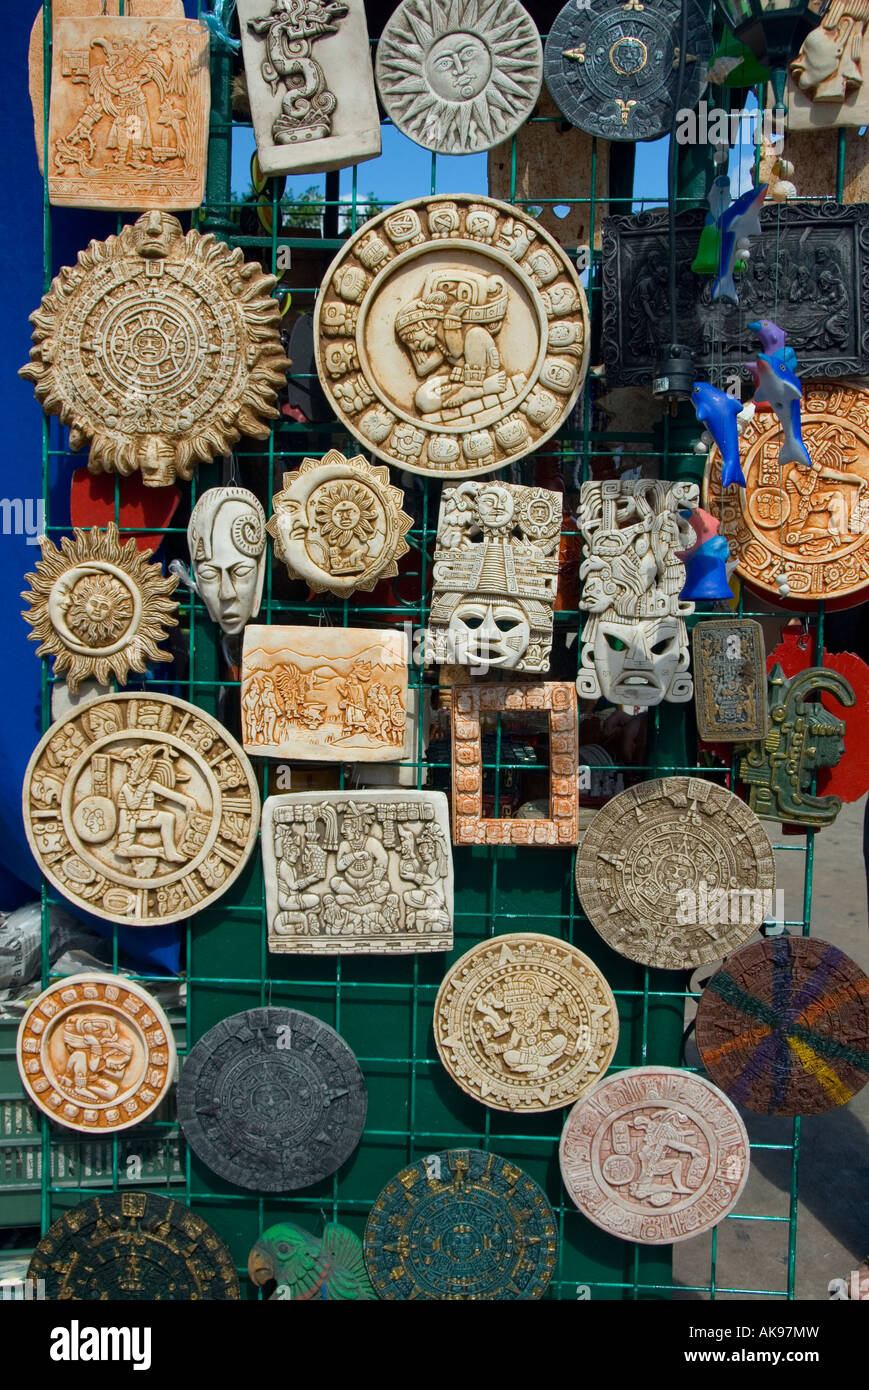 Les calendriers mayas en vente sur stand au marché d'art et d'artisanat du dimanche en Merida Yucatan Mexique Domingo 2007 NR Banque D'Images